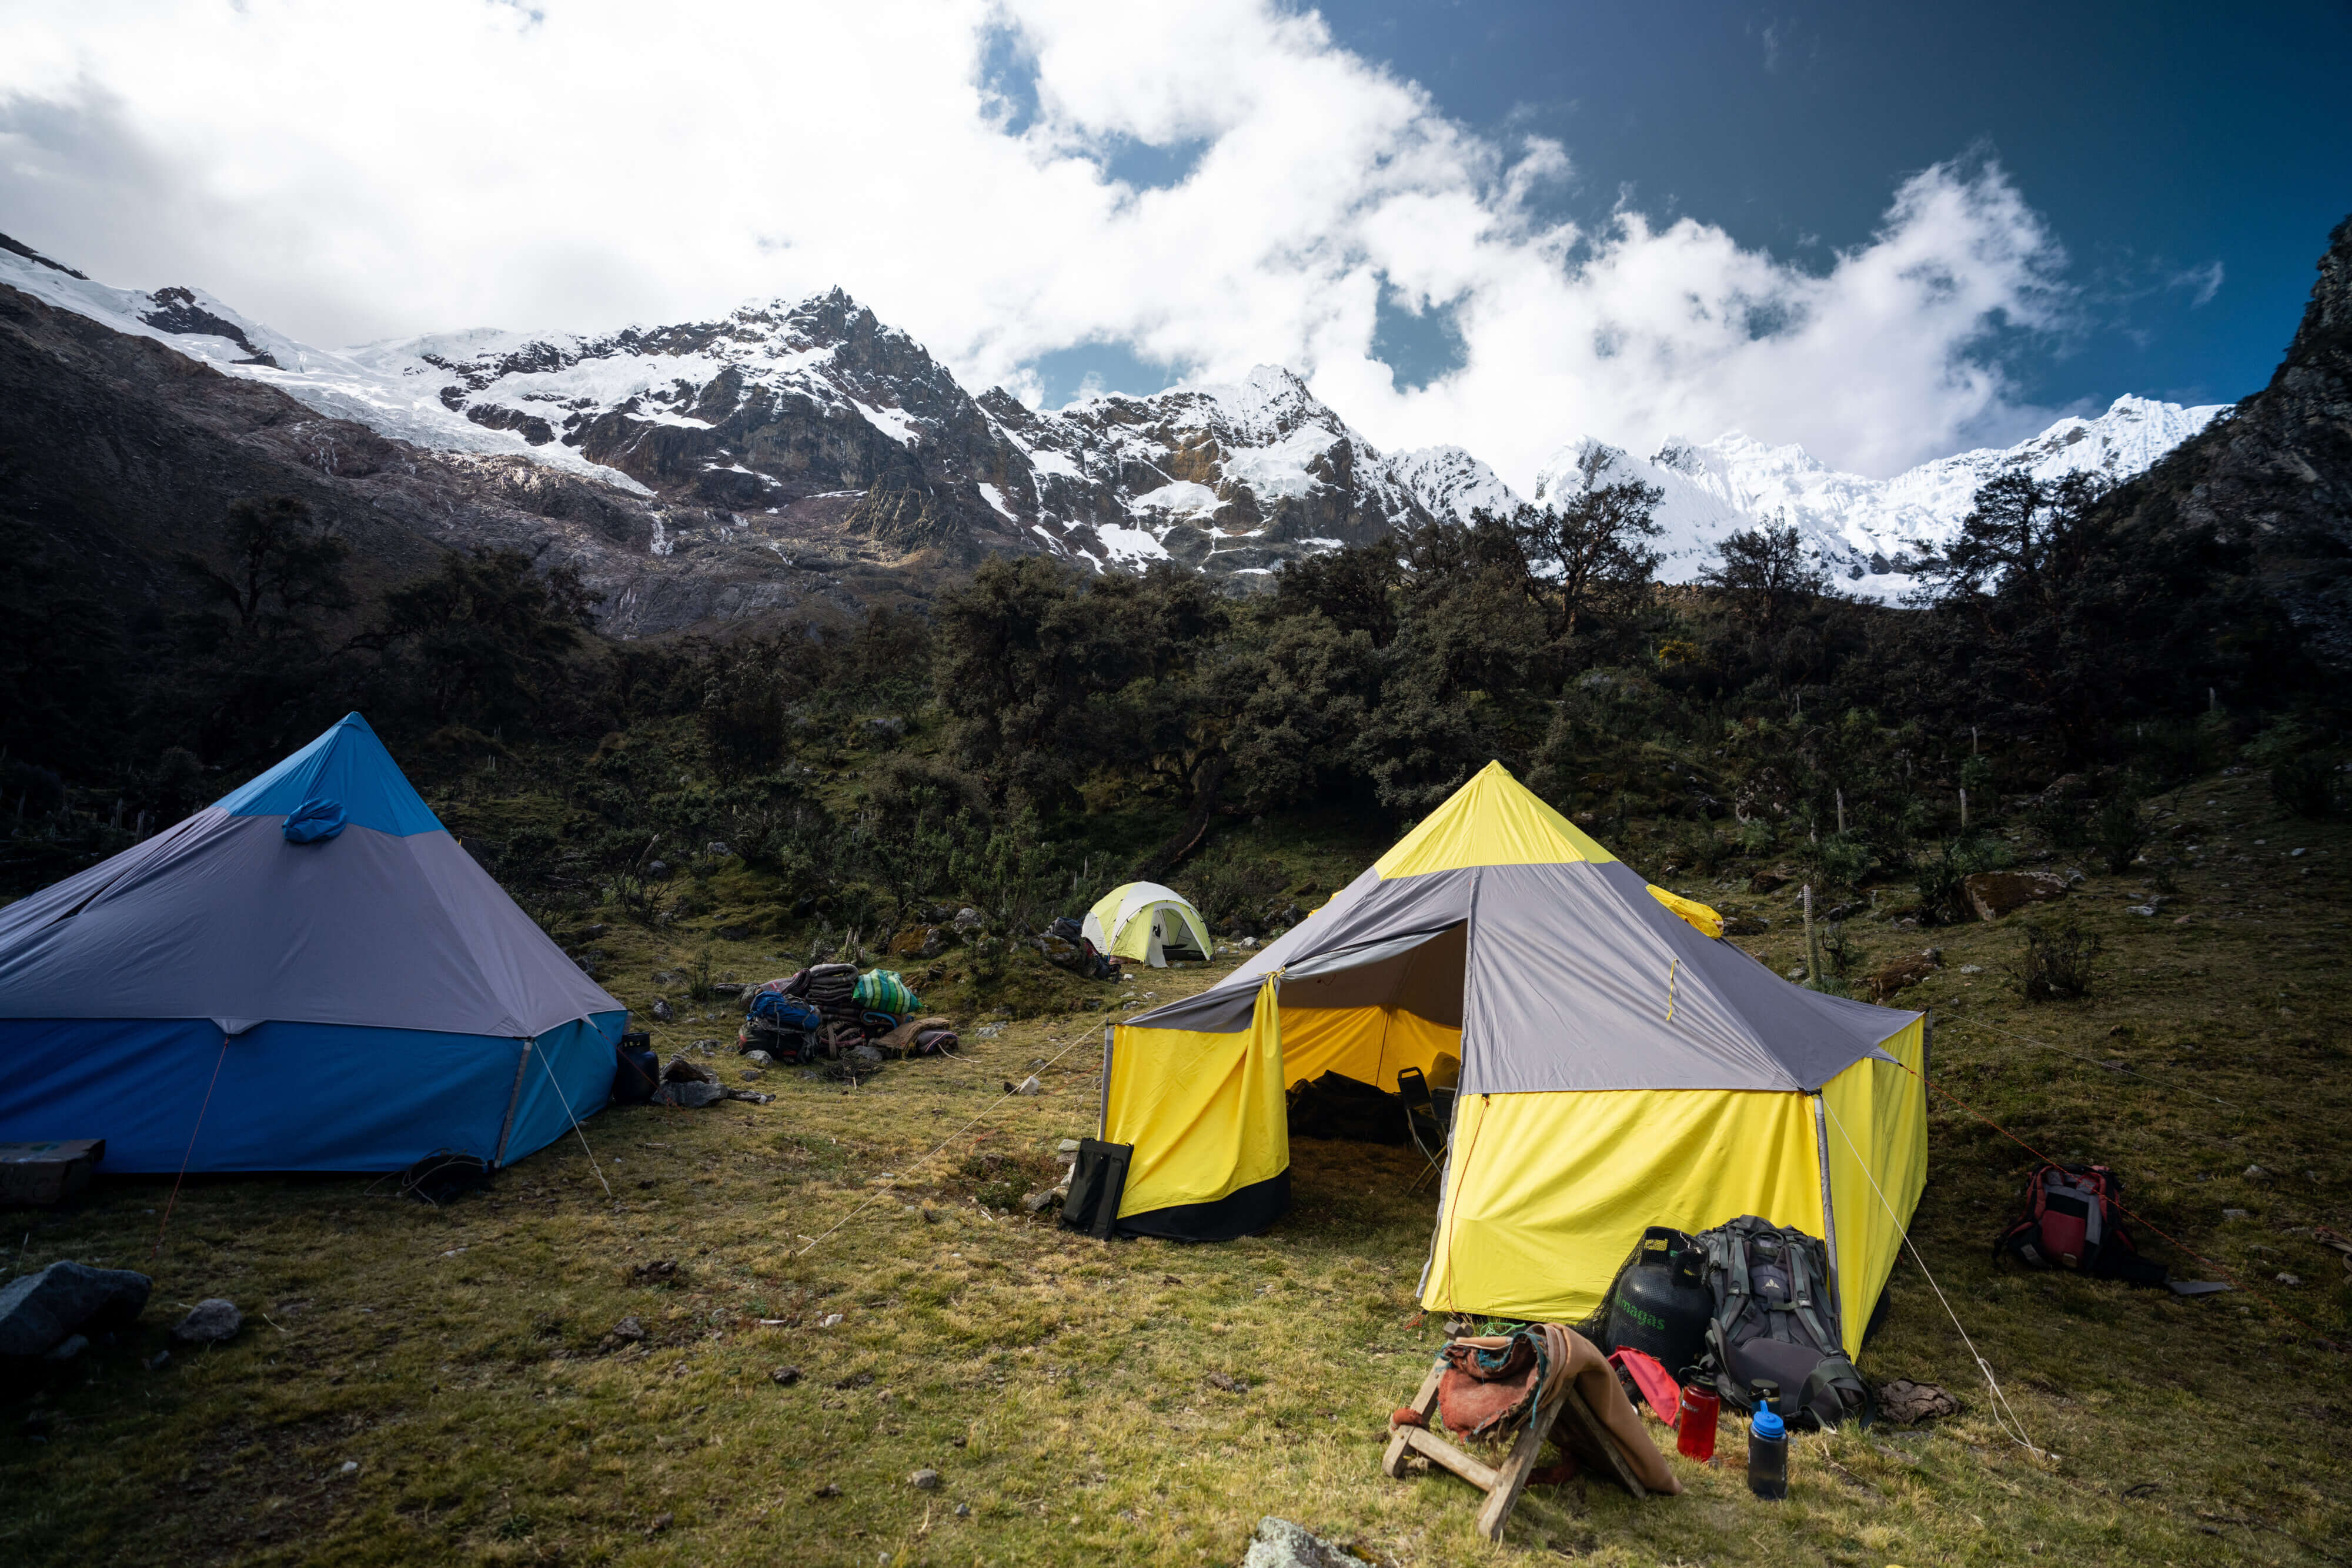 Base Camp under Alpamayo at 13,500 ft/4,115m.